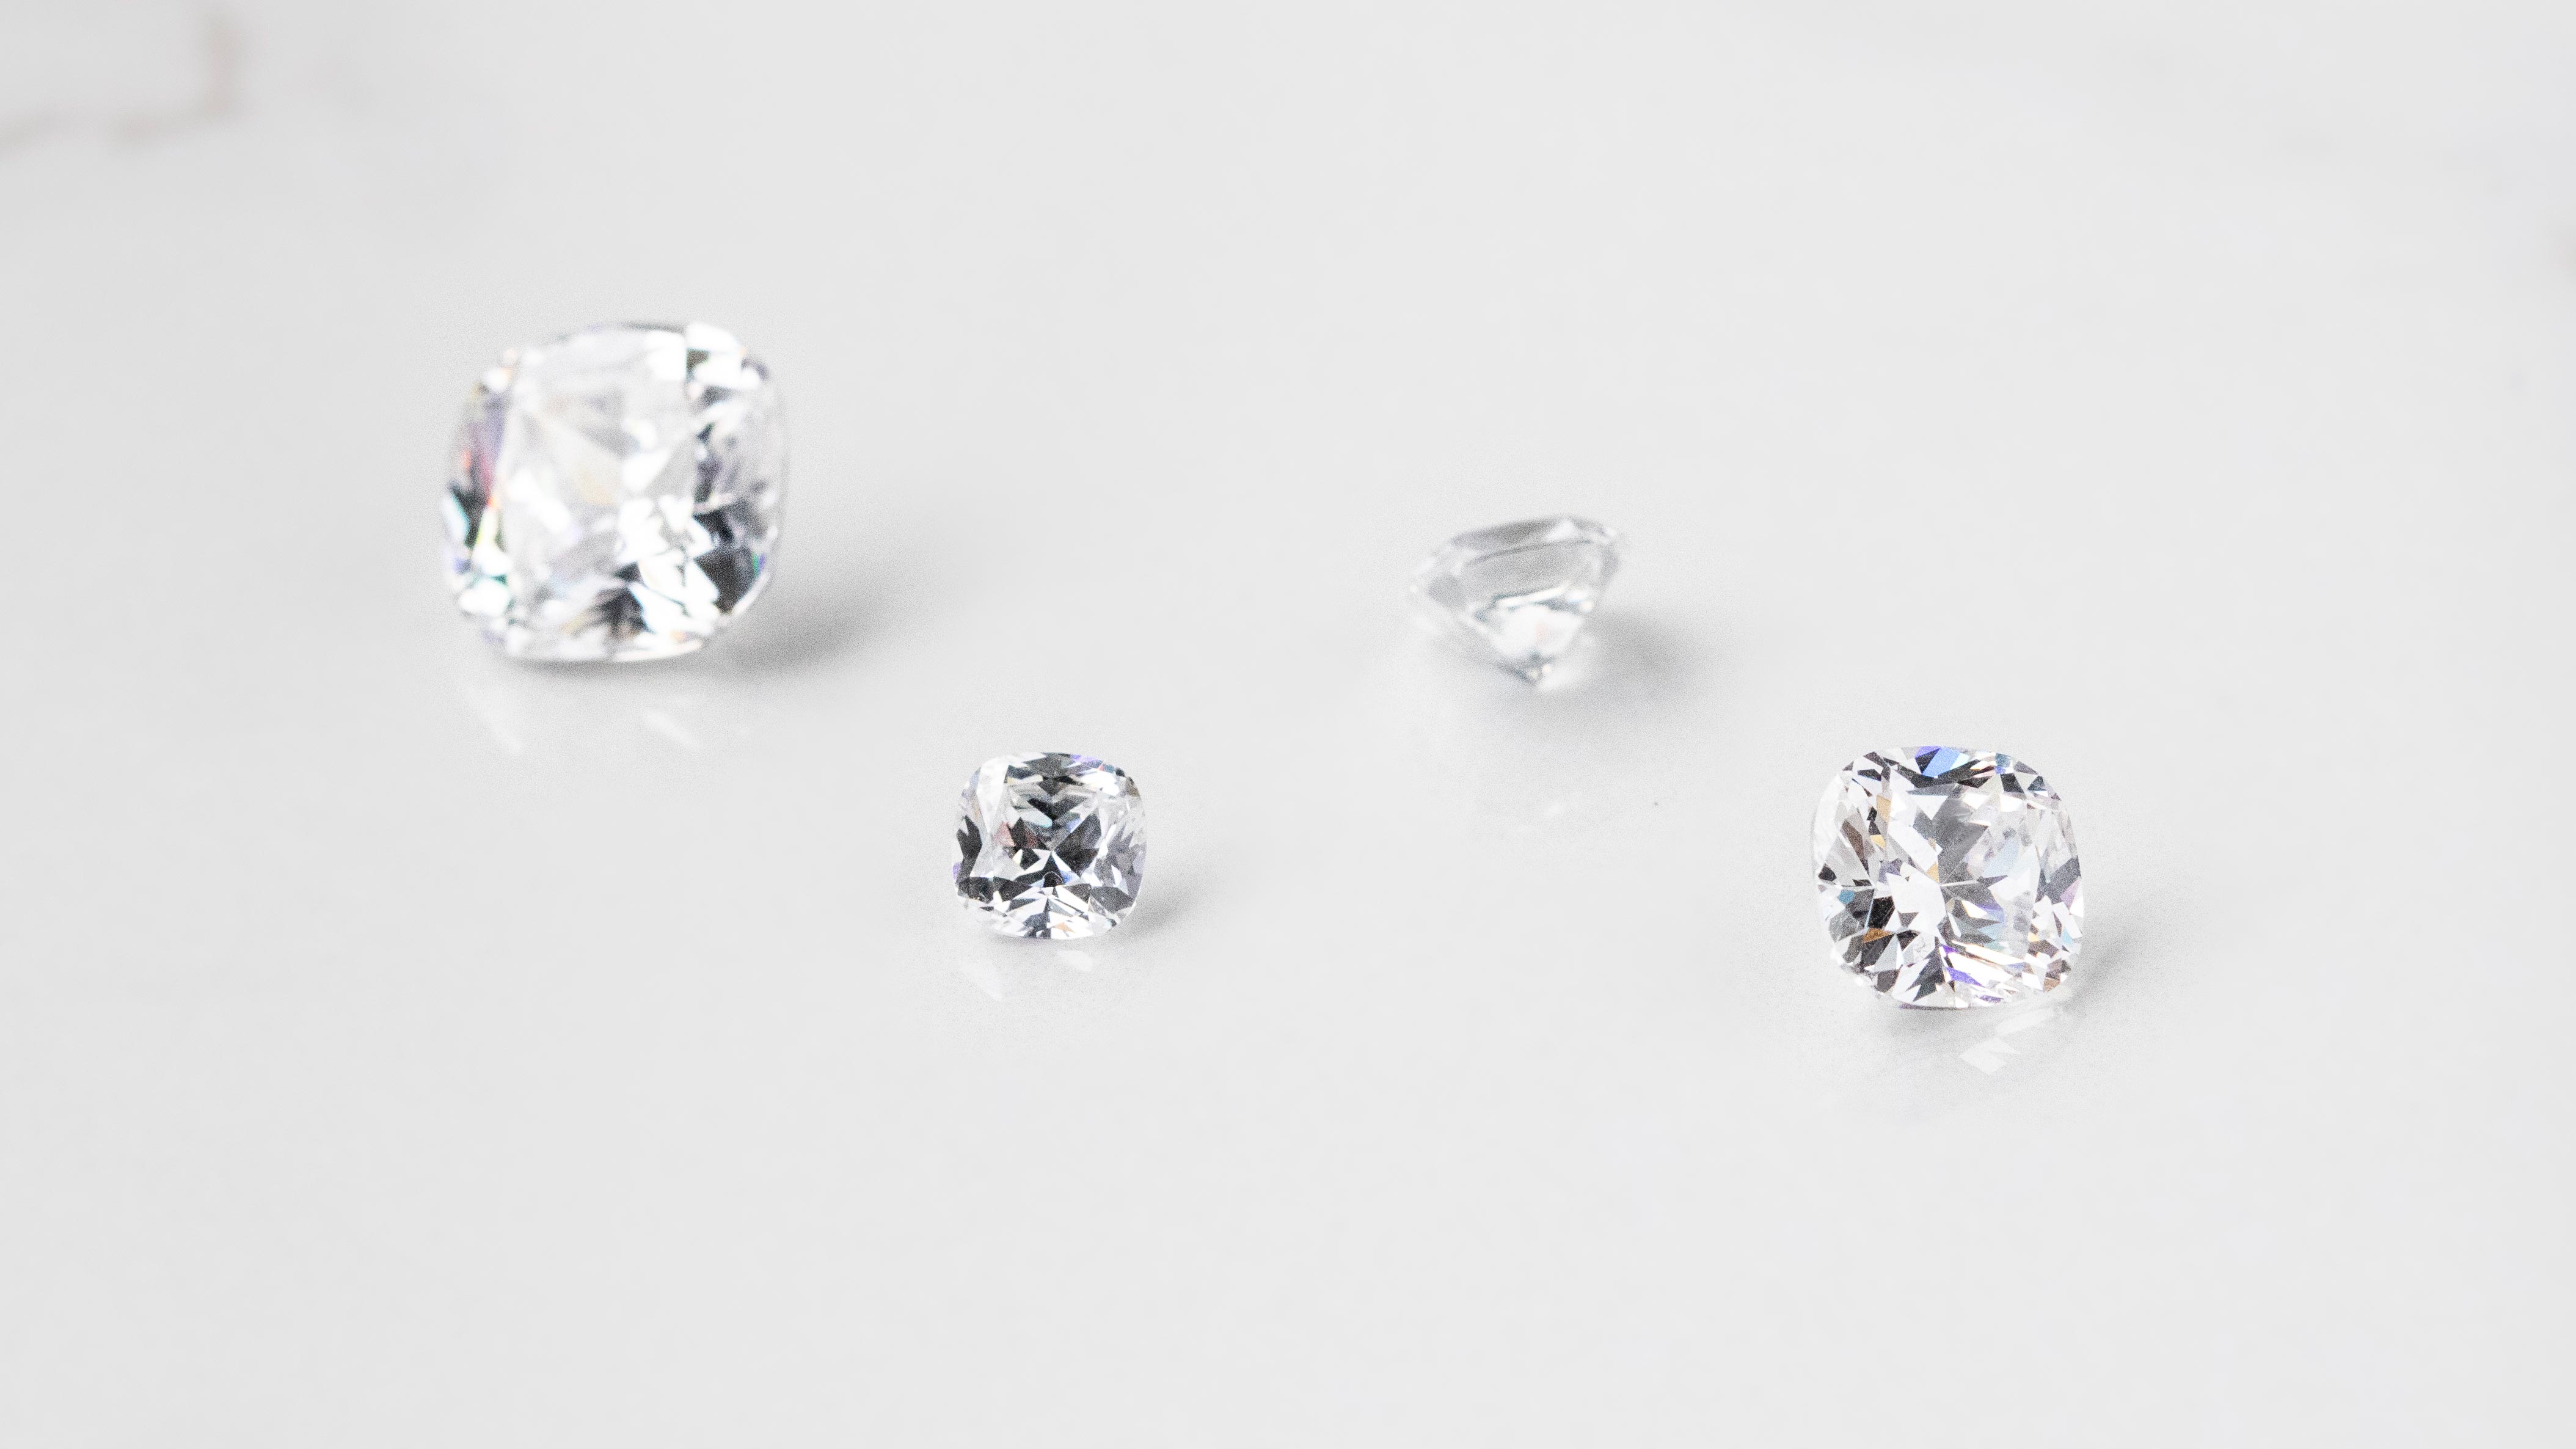 Four loose Nexus Diamond alternatives